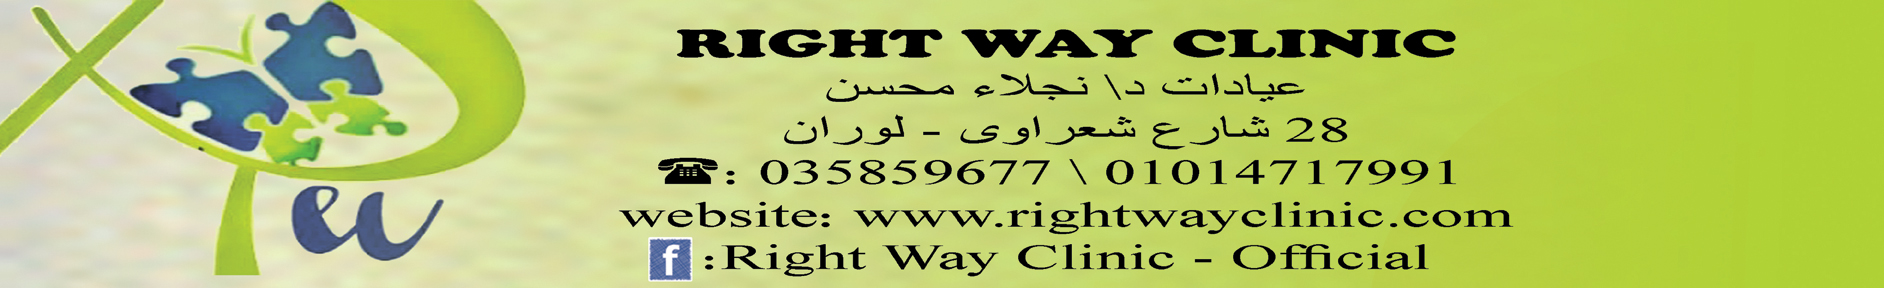 Right Way Clinic - Dr.Naglaa Mohsen